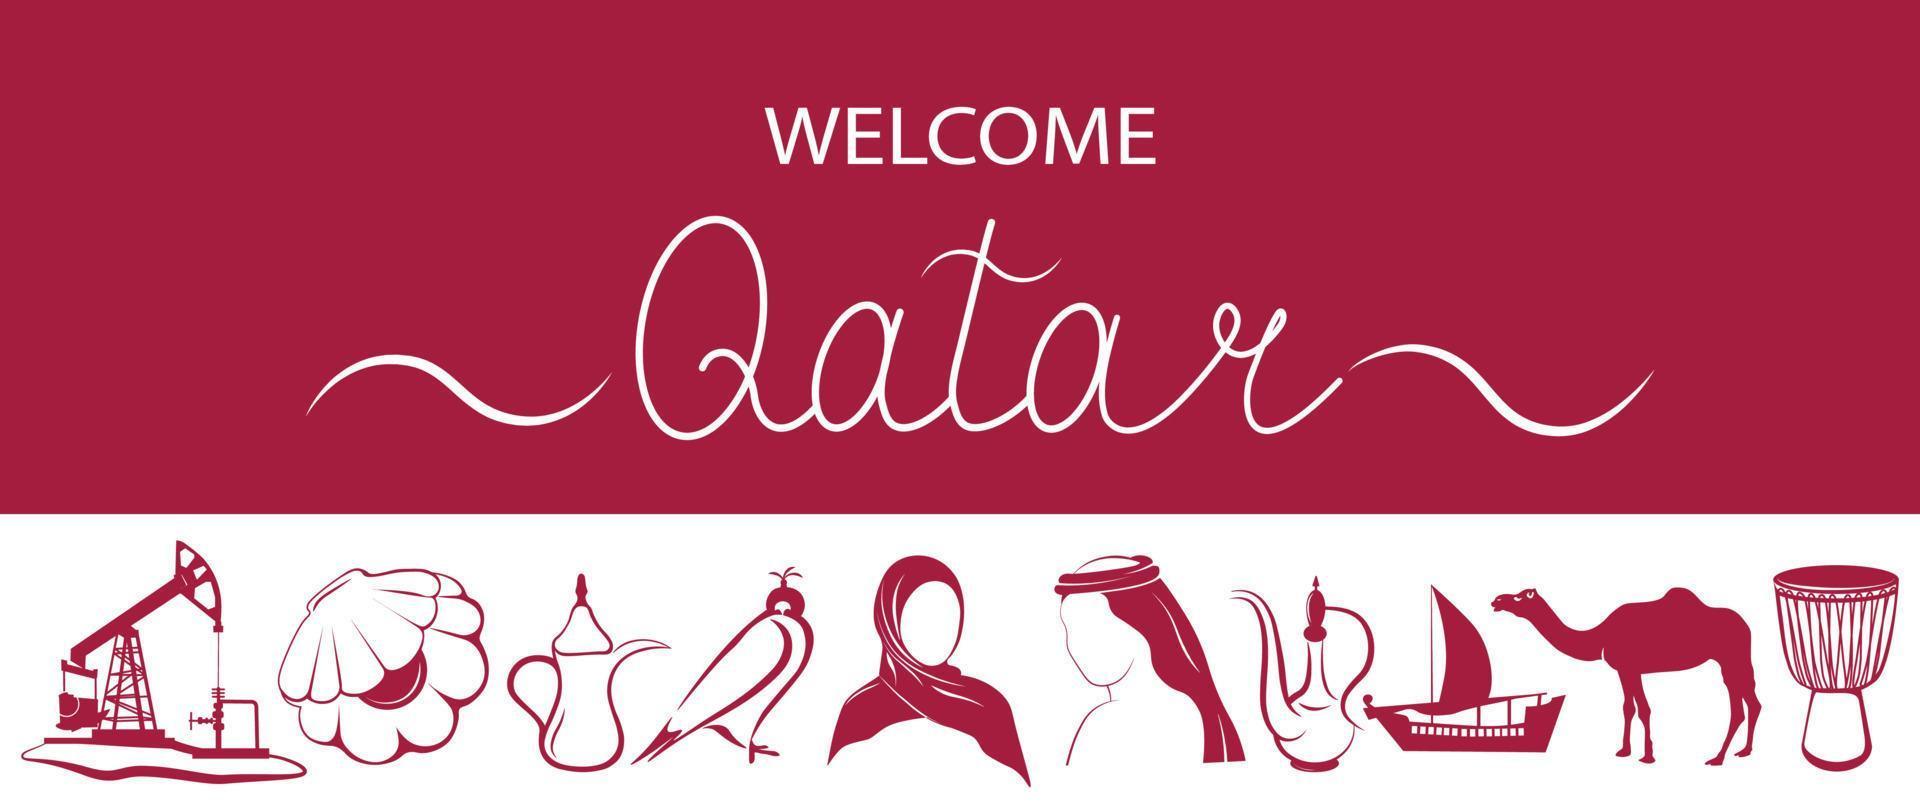 bienvenido a qatar y sus atracciones vector stock ilustración. camello, musulmanina, postres orientales, teteras, perlas, extracción de aceite, tambores, tetera oriental.